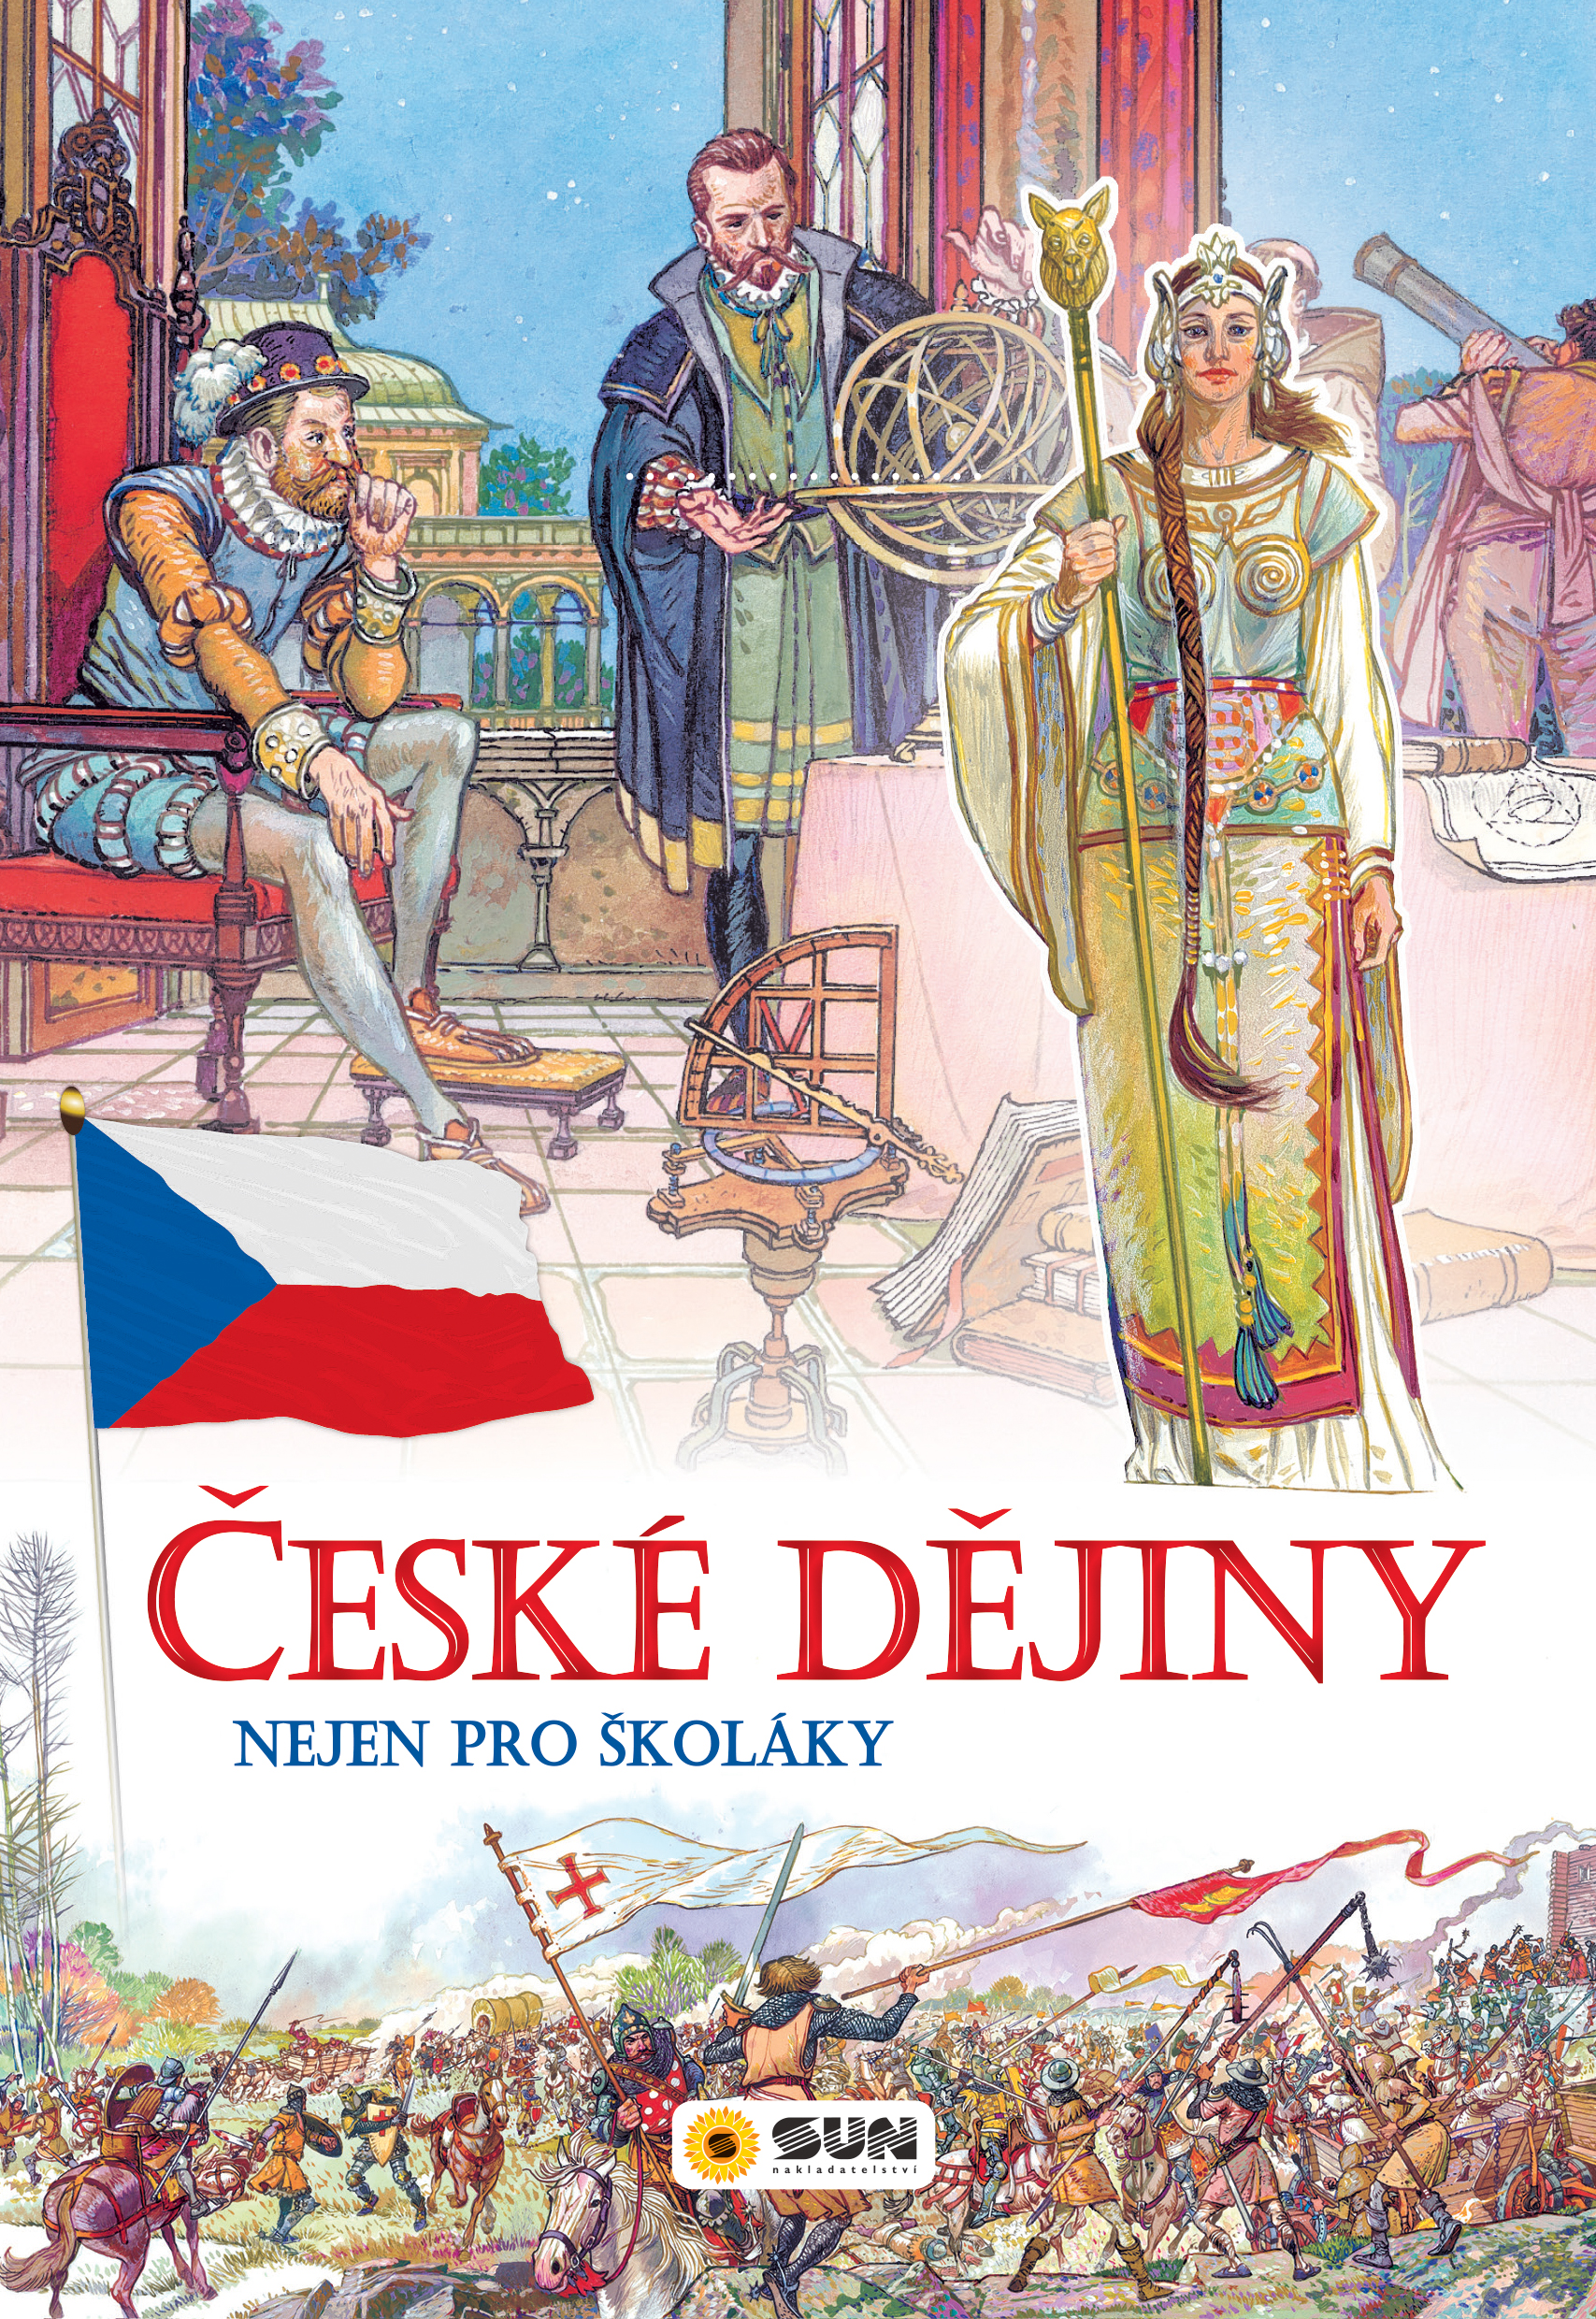 080-37 České dějiny titulka